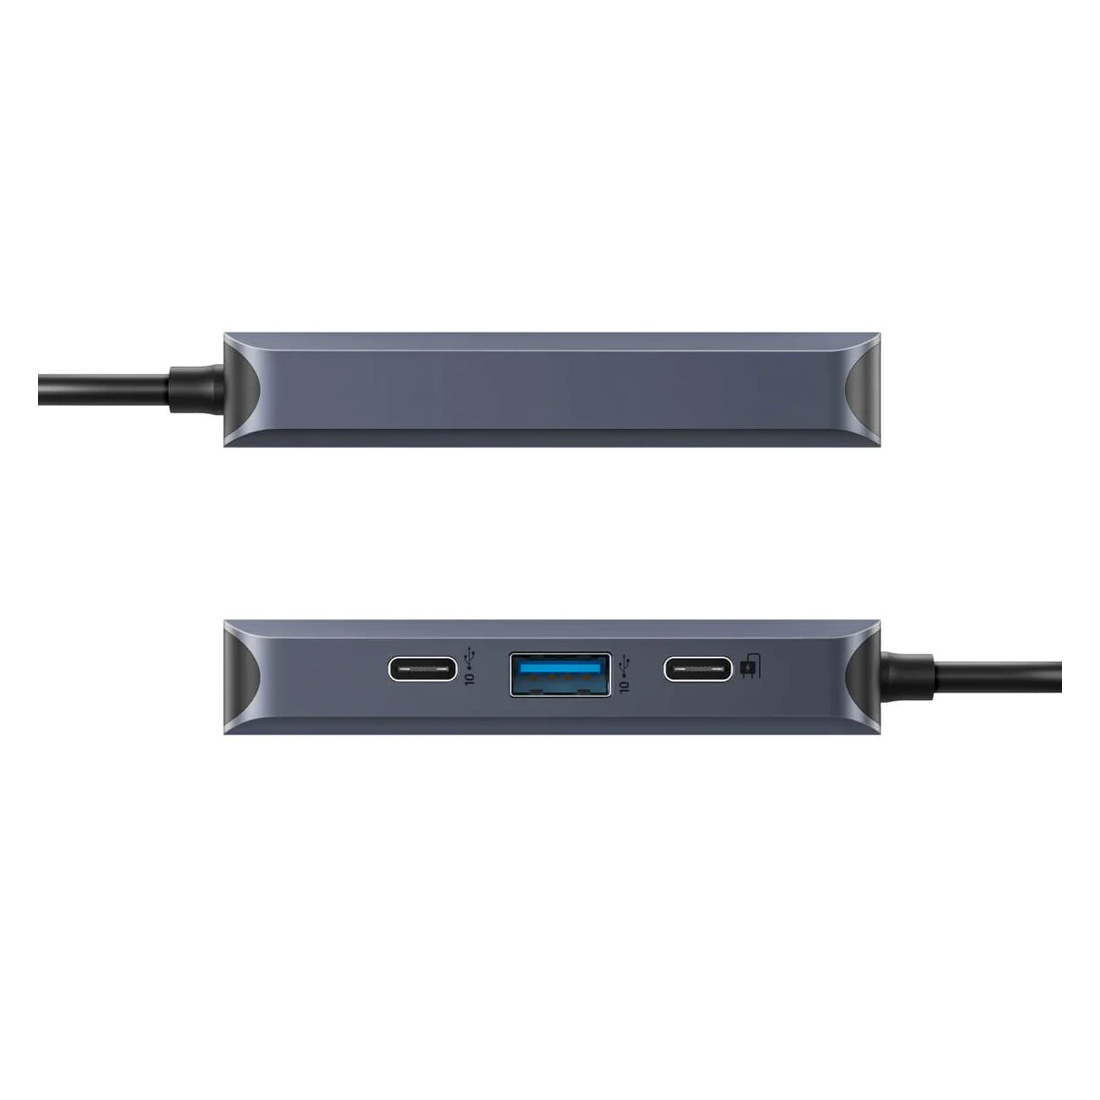 Hub USB-C HyperDrive Next 4 port